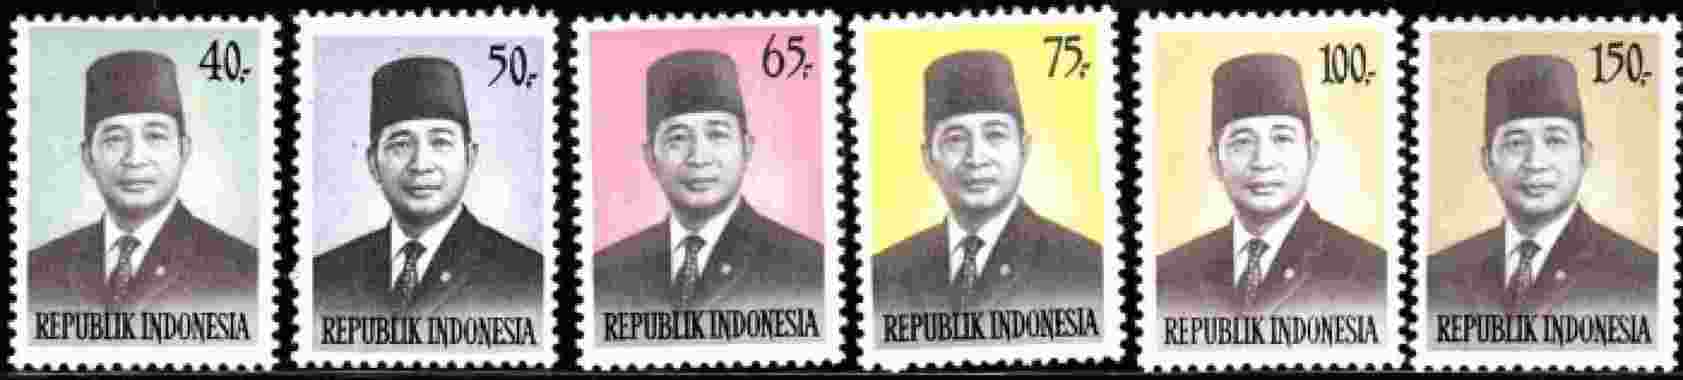 Prangko Presiden Soeharto 1974